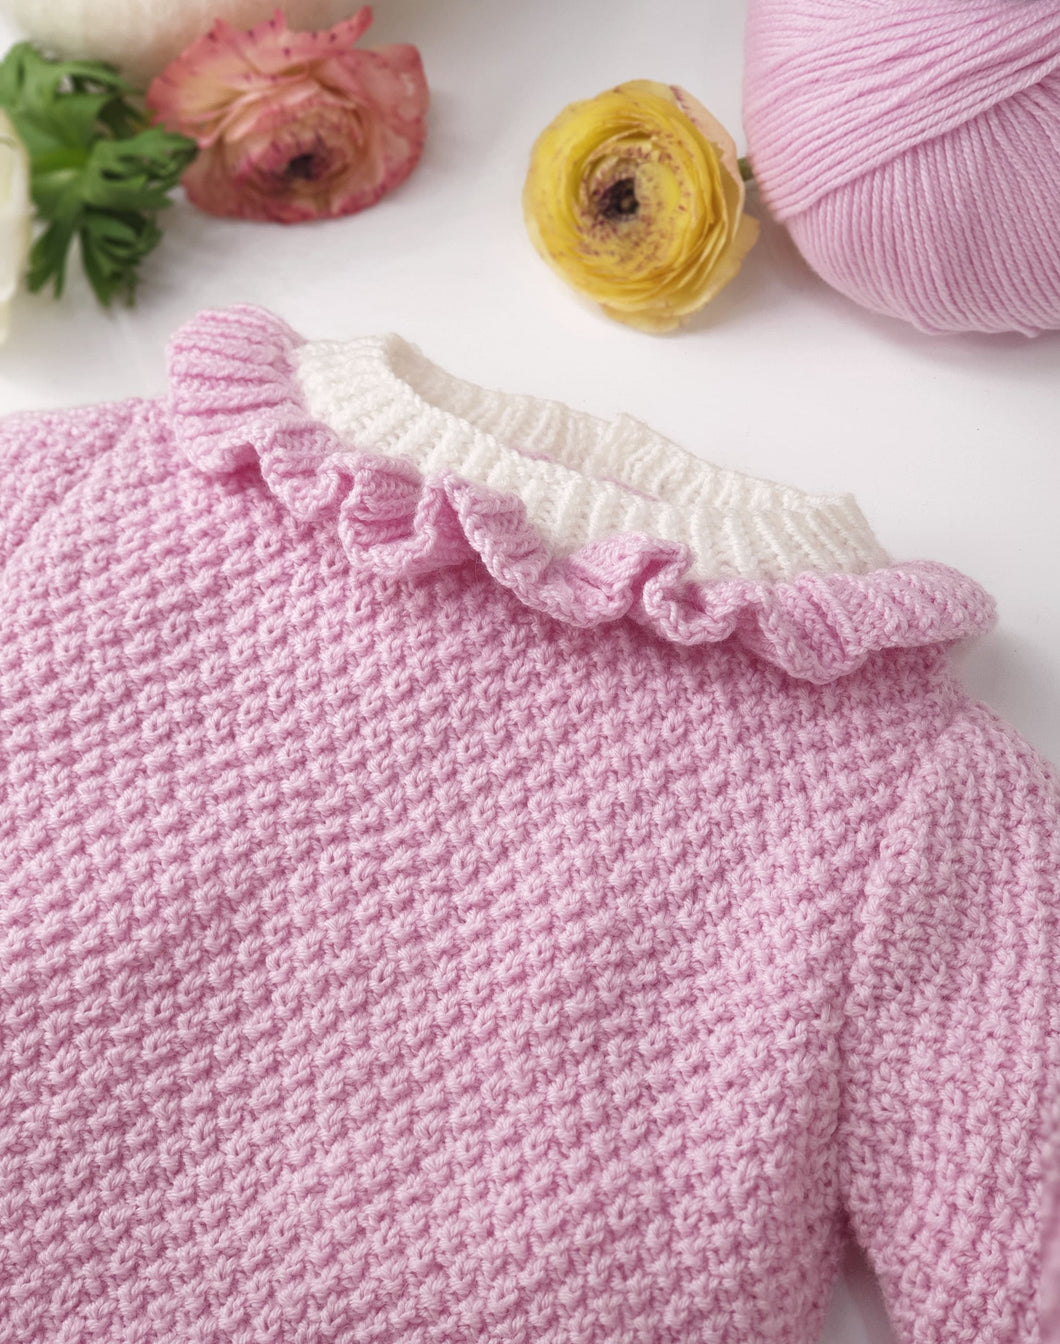 Lila : La brassière bébé à tricoter au point mousse – Anny Blatt